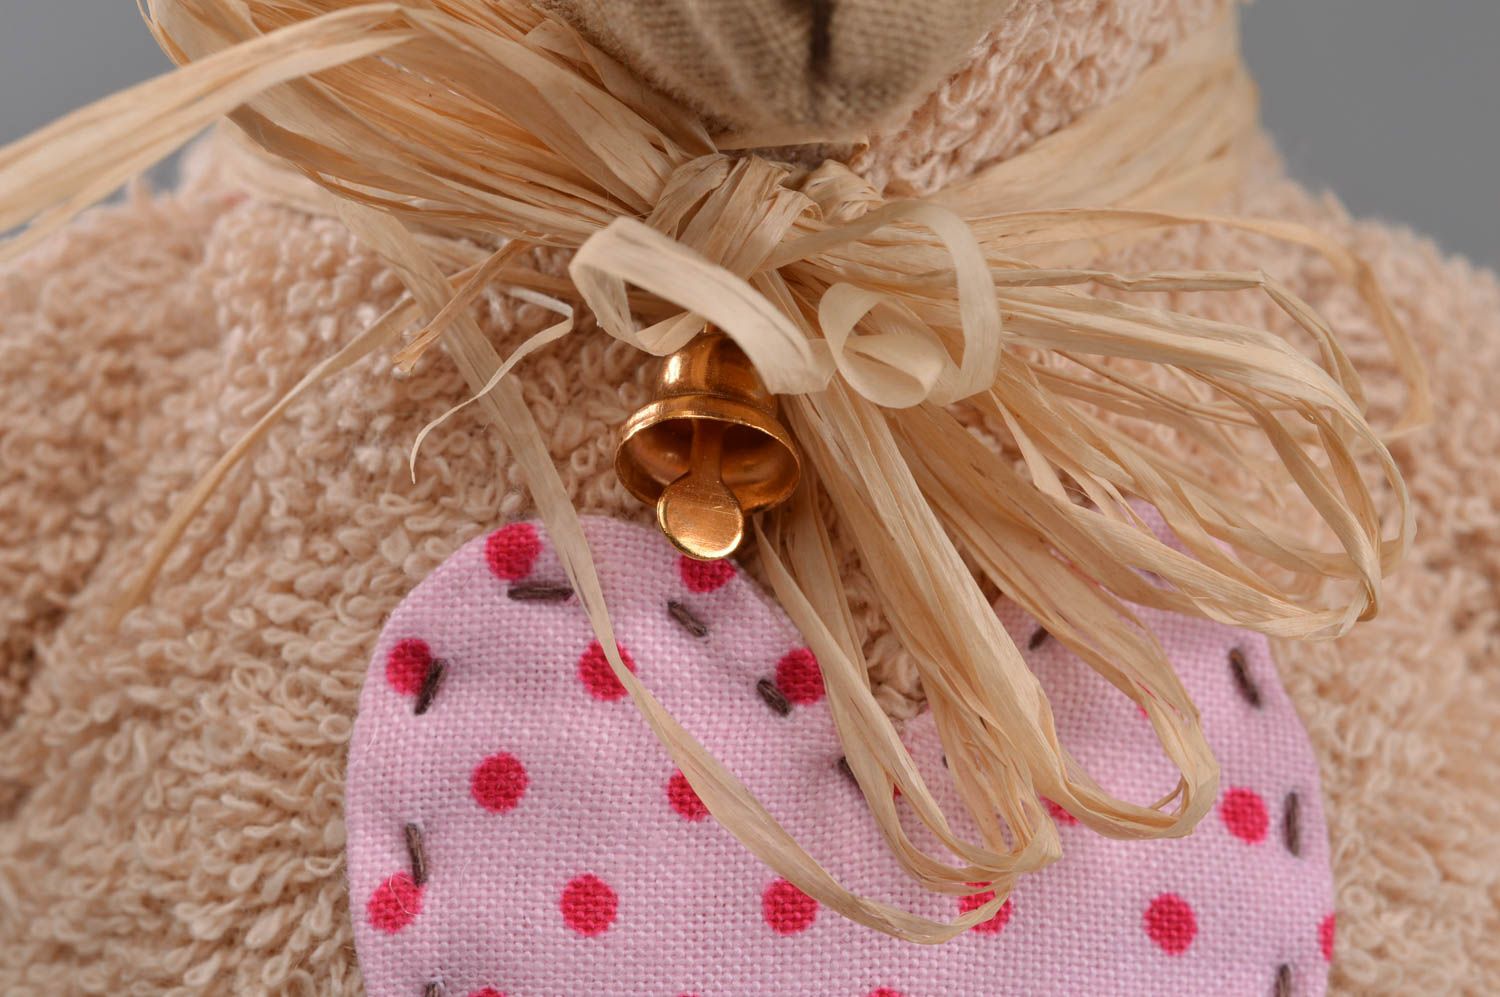 Textil Kuscheltier Schaf aus Mohär beige weich handmade Spielzeug für Kinder foto 2